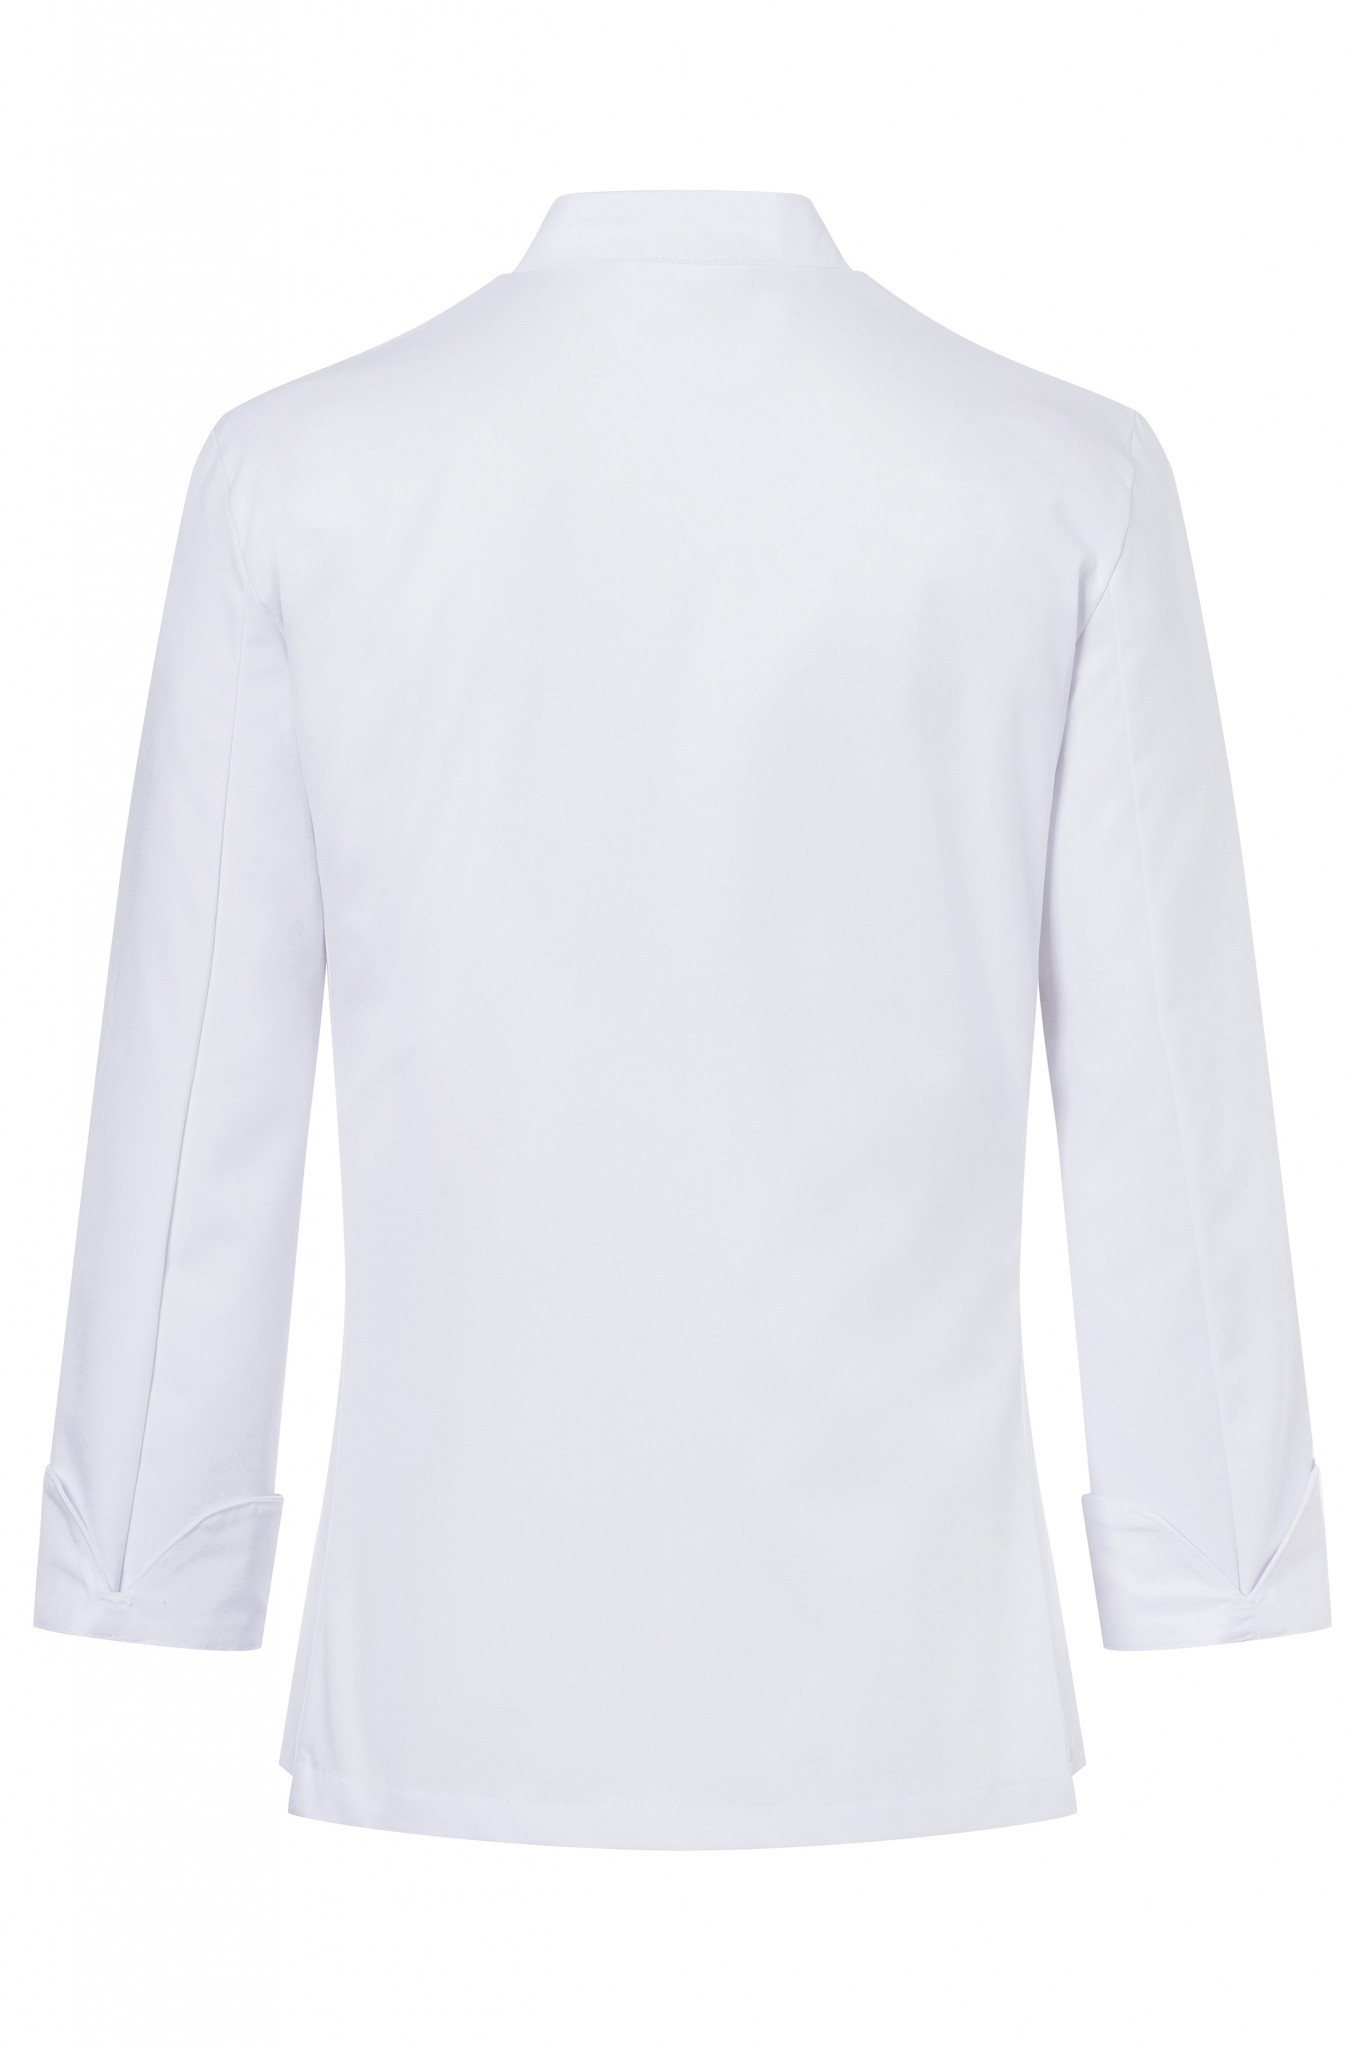 Damenkochjacke Larissa | Weiß | 65% Polyester / 35% Baumwolle | Erhältlich in 9 Größen